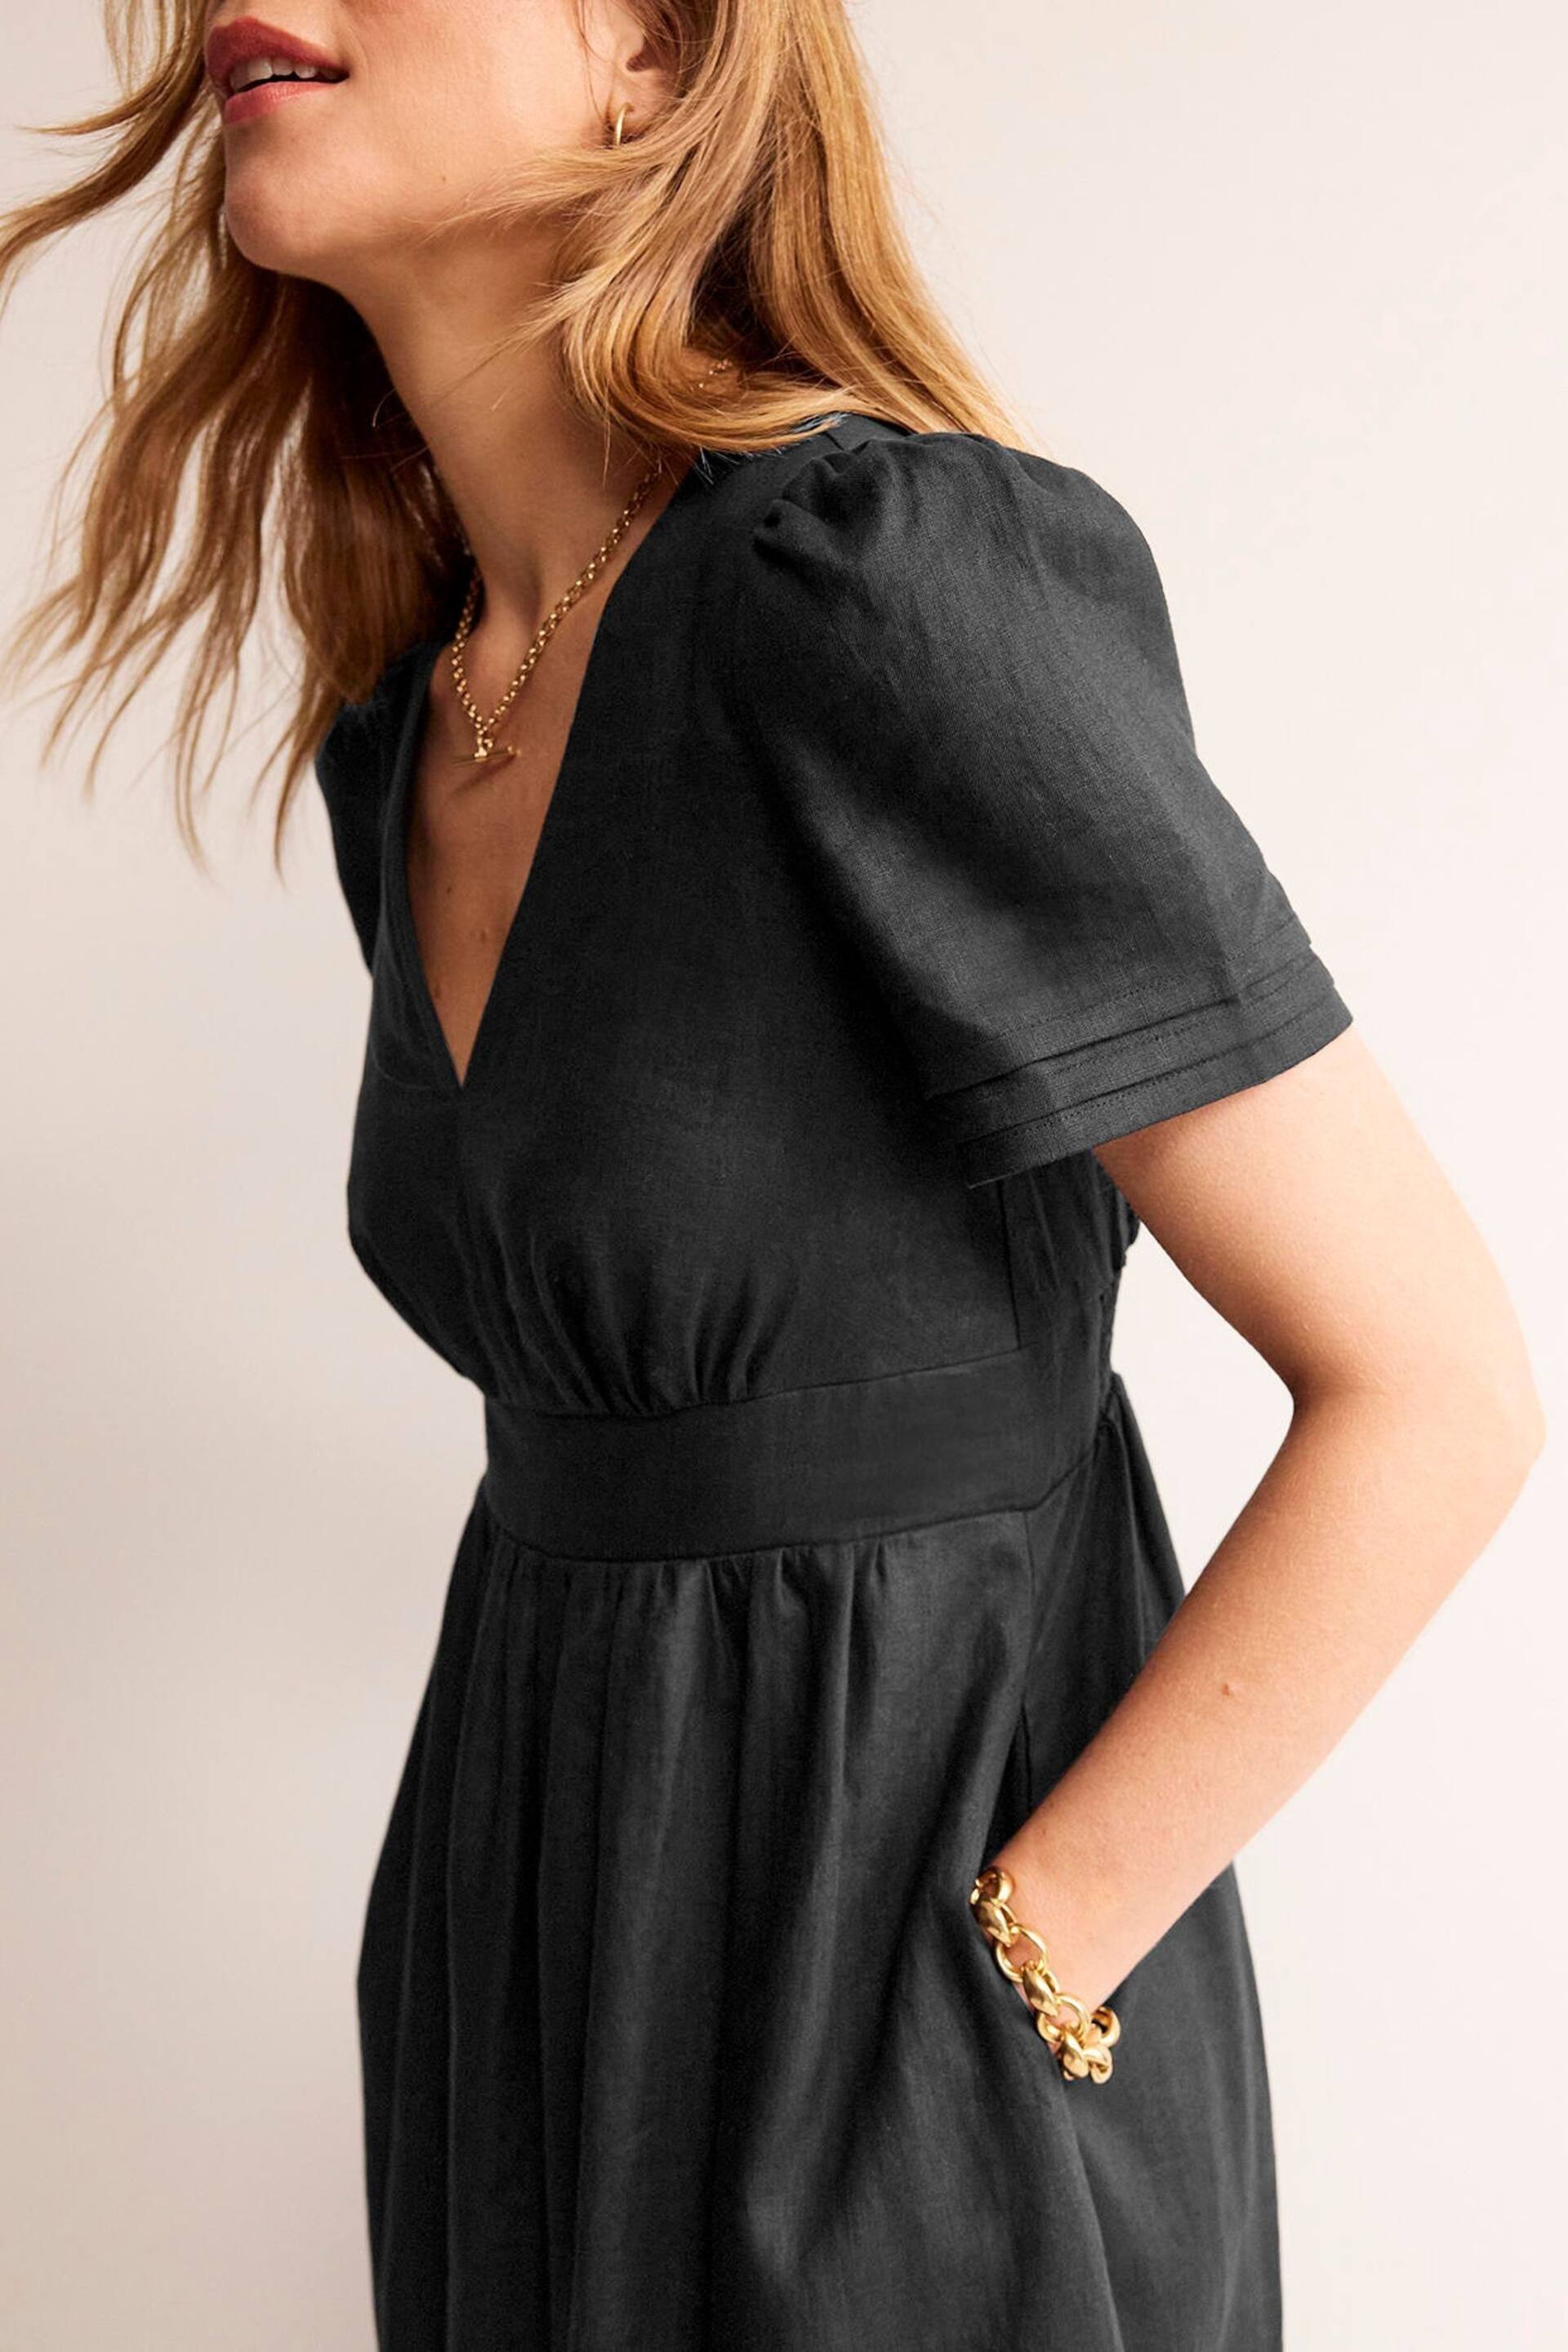 Boden Black Short Sleeve Linen Midi Dress - Image 4 of 5